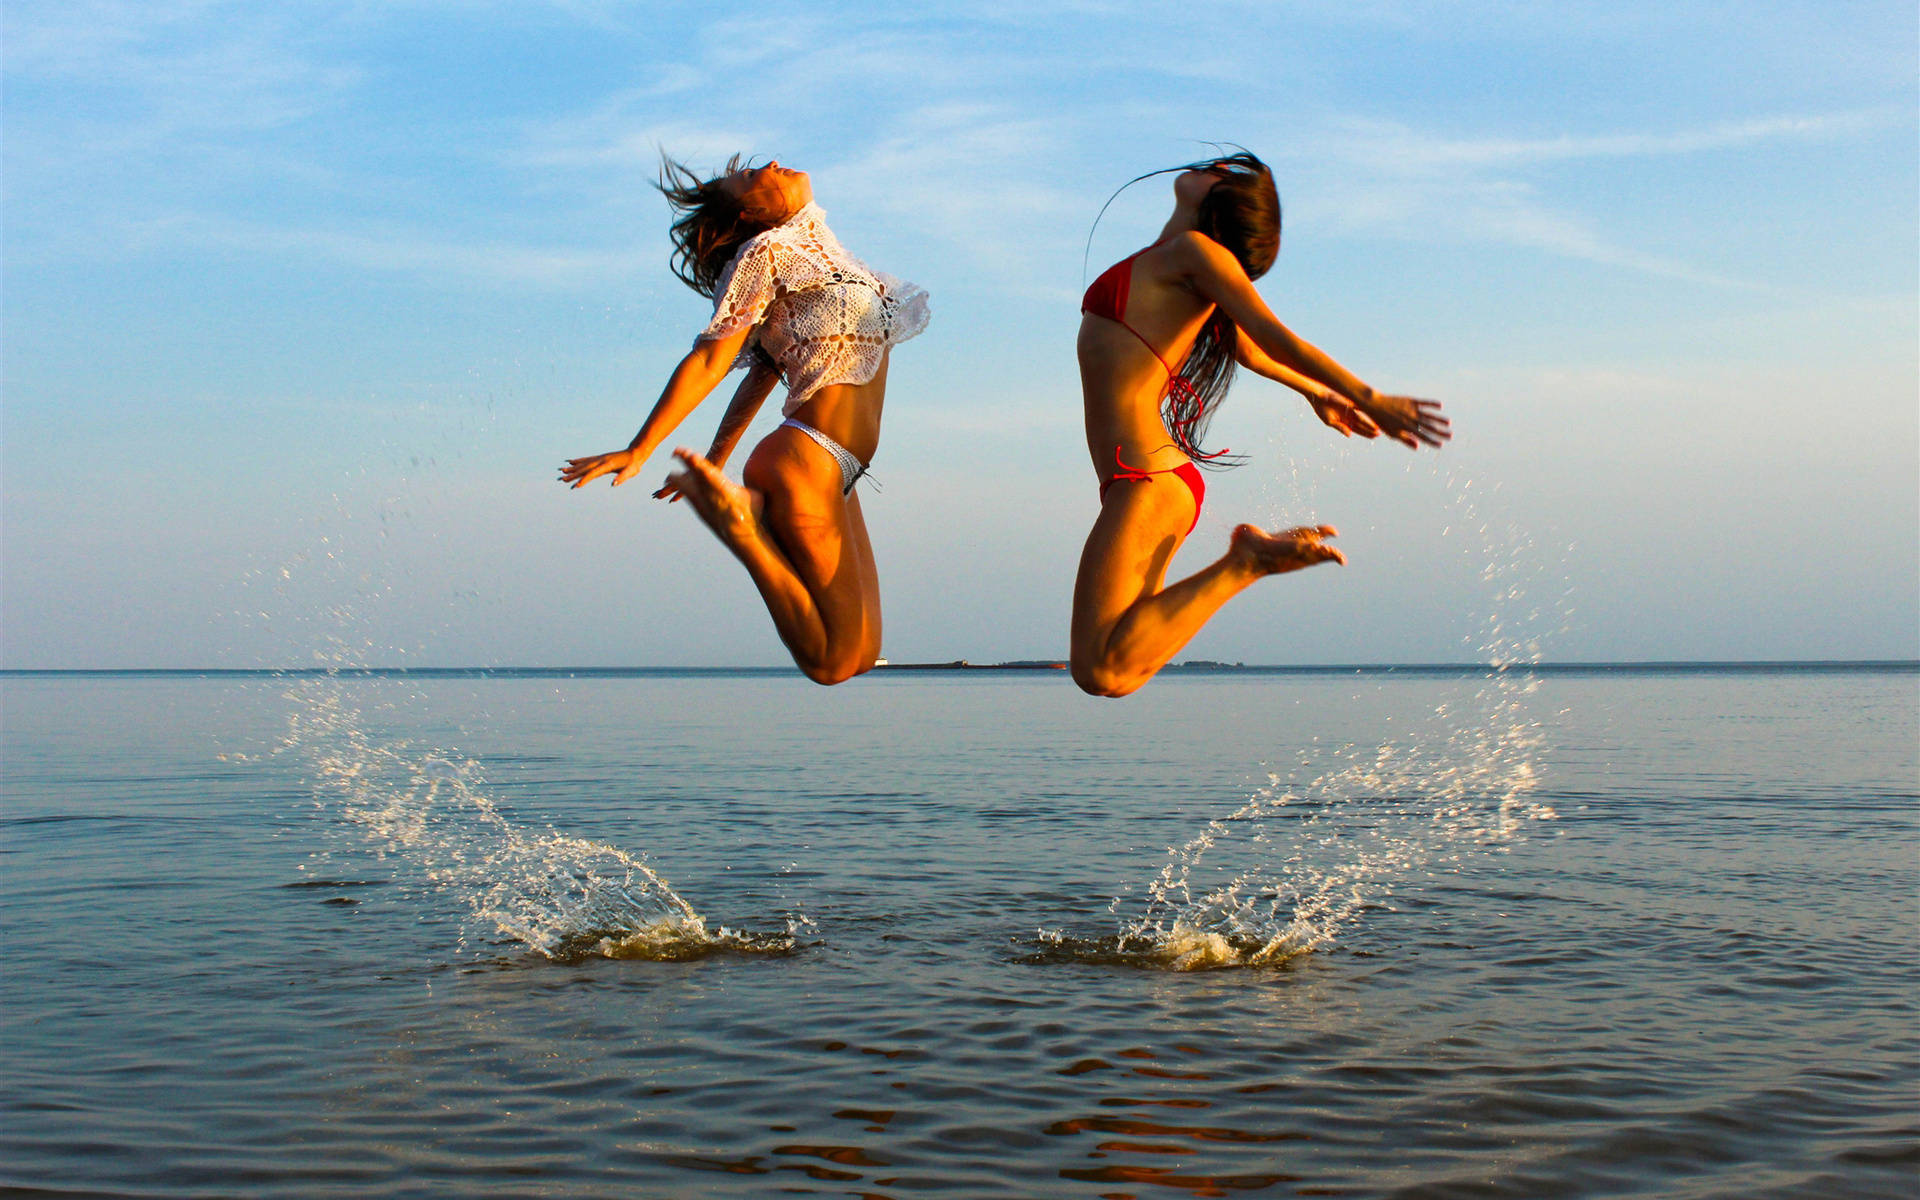 Bikini Girl Jumping On Sea Picture